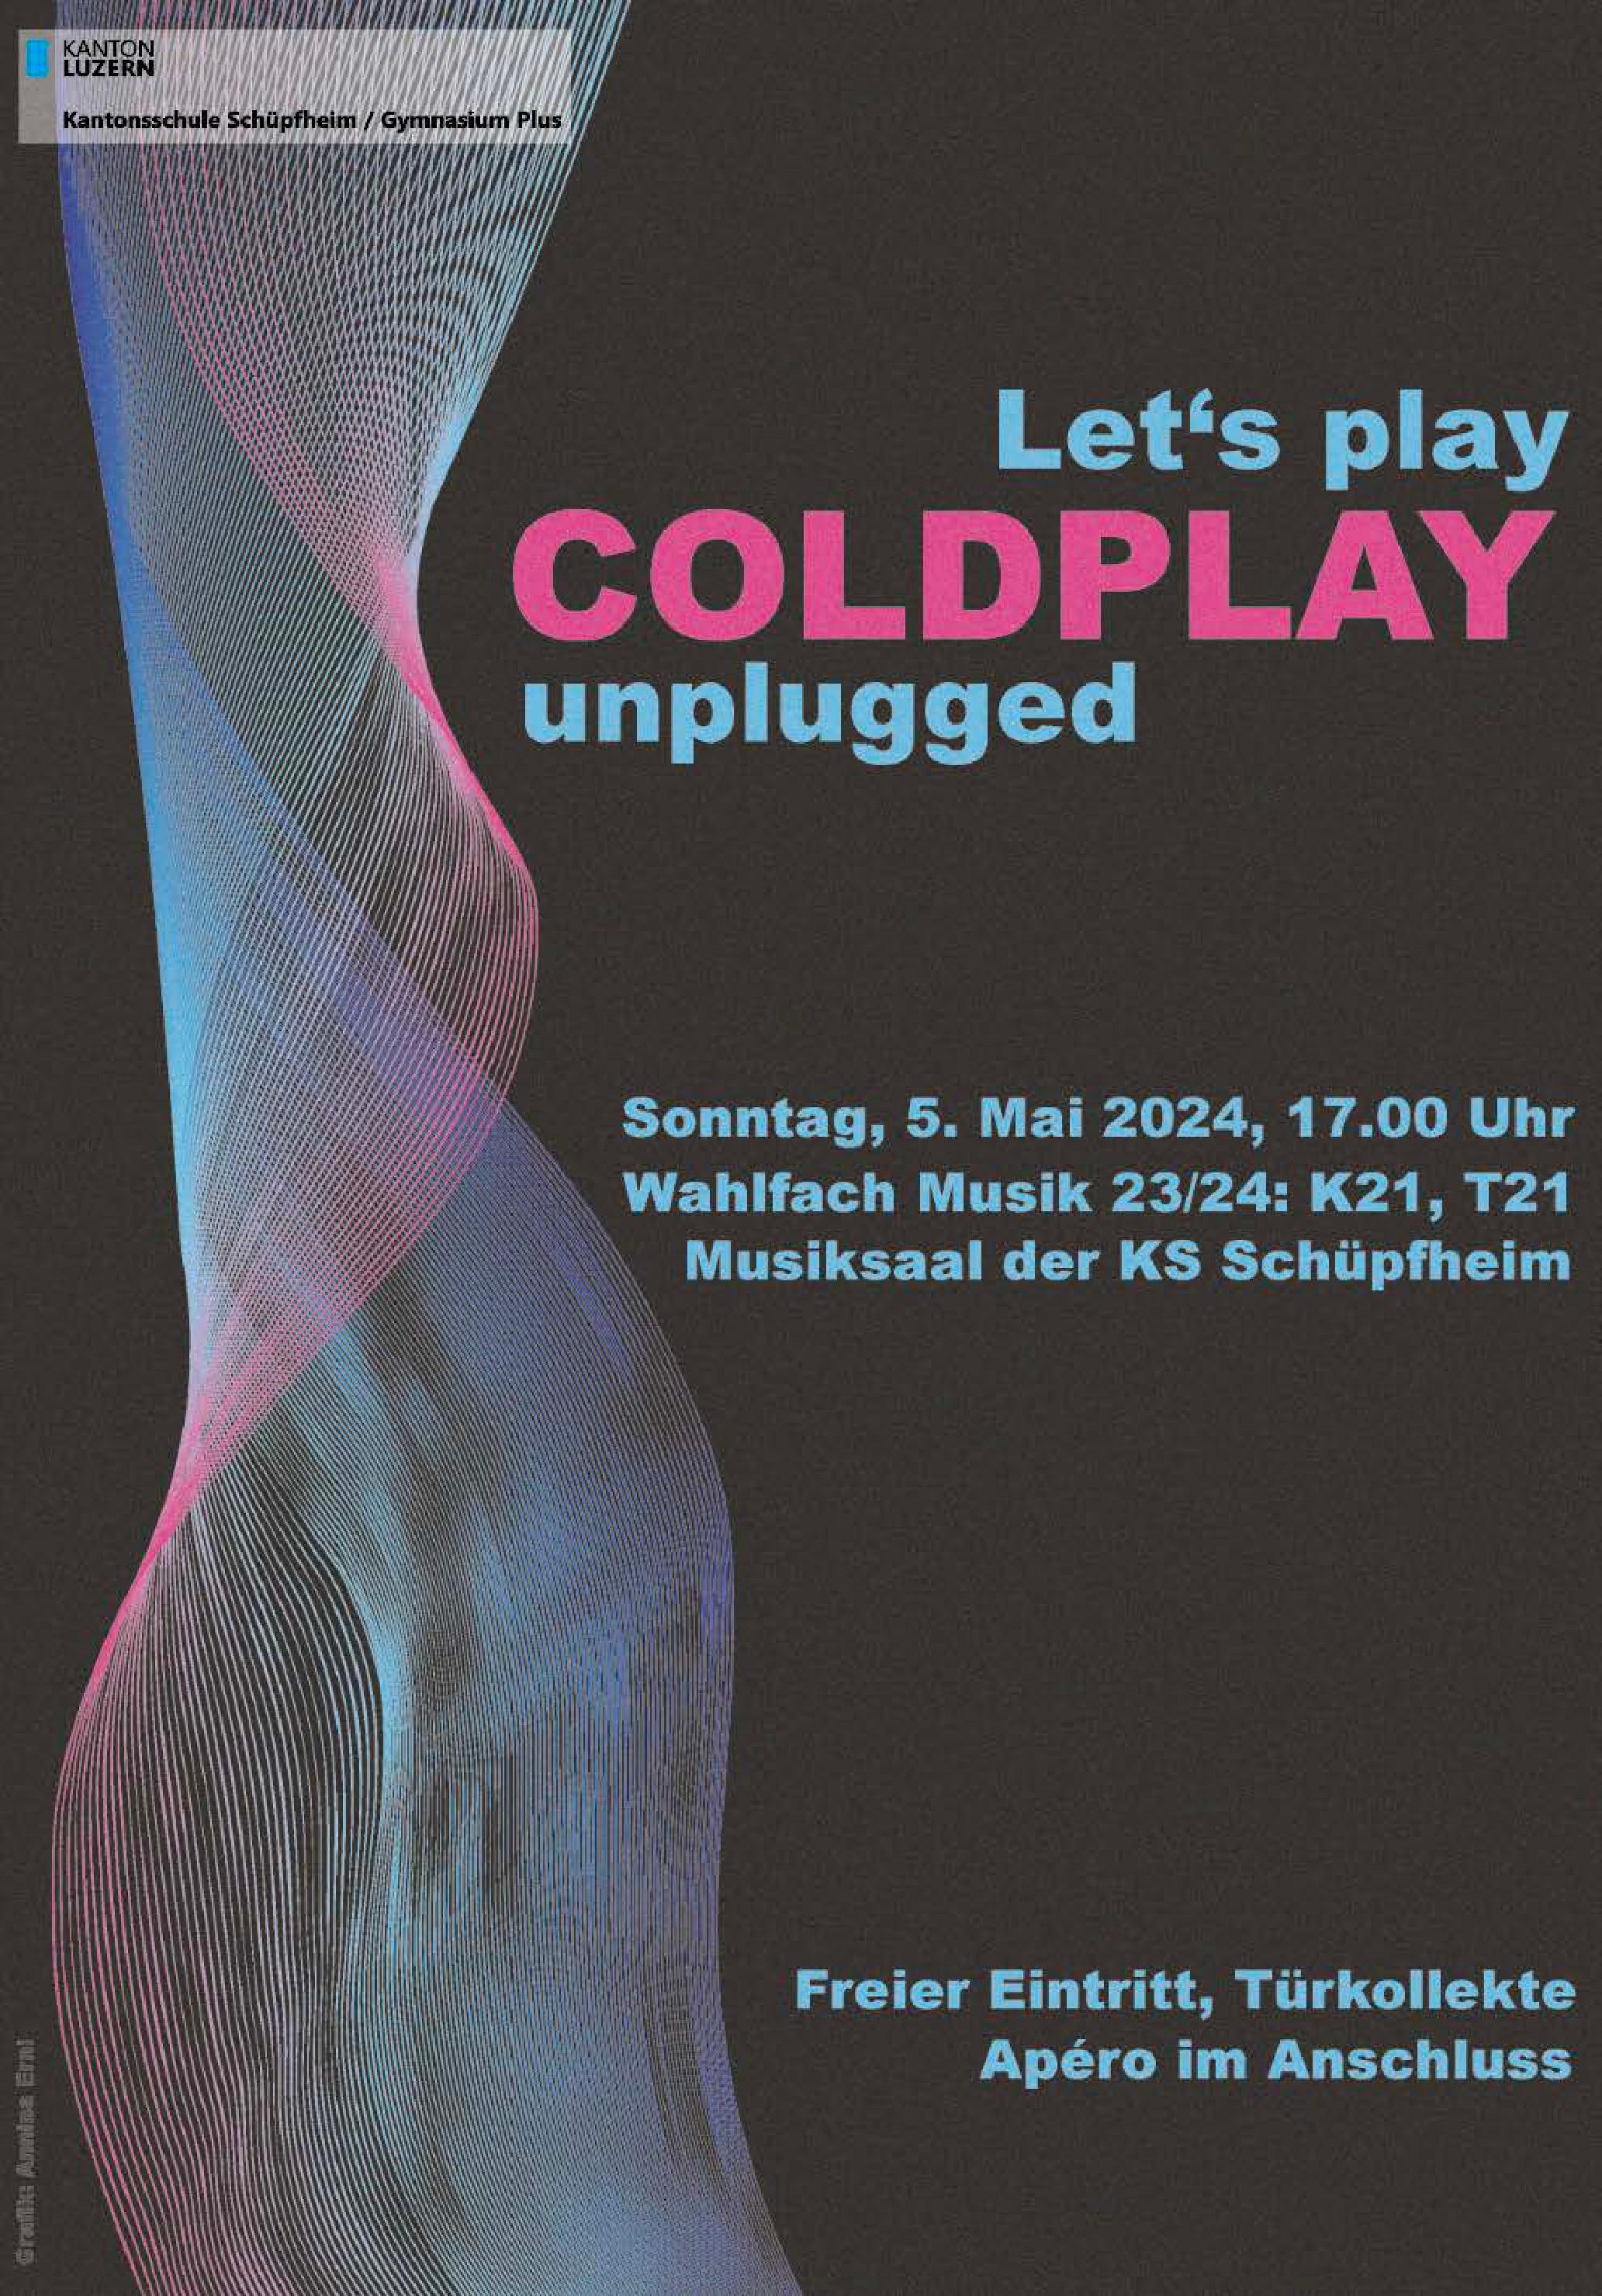 Das Bild ist eine Einladung für  das Konzert Coldplay unplugged des Wahlfach Musik der KS Schüpfheim am 05. Mai 2024 um 17.00 Uhr